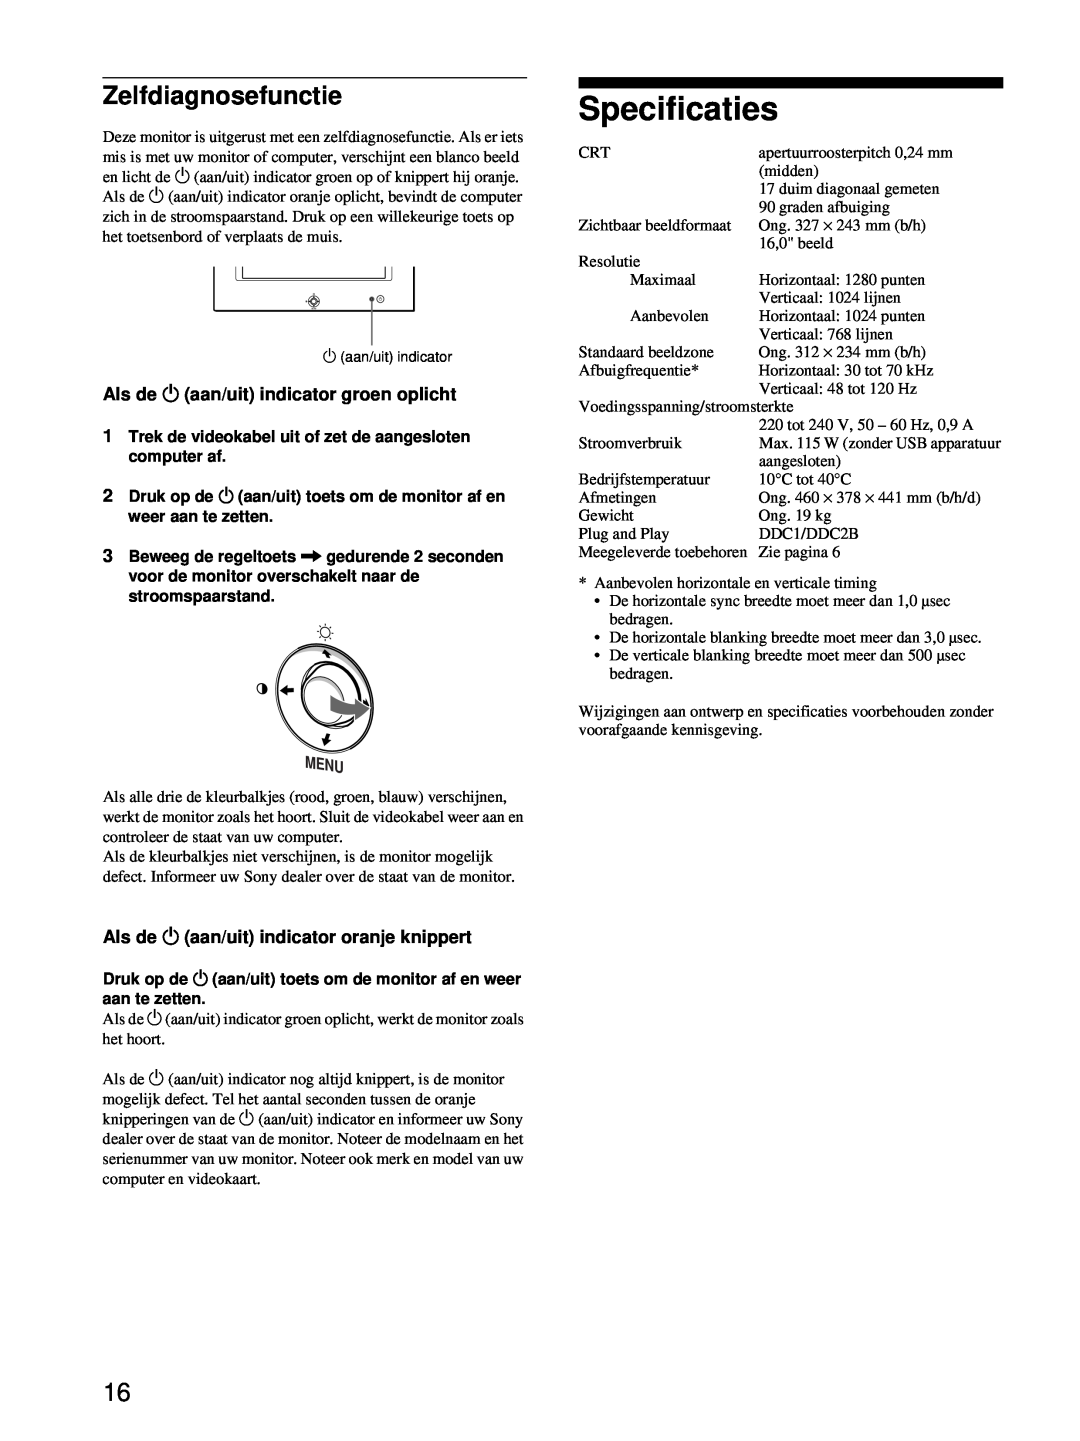 Sony HMD-A220 operating instructions Specificaties, Zelfdiagnosefunctie, Als de 1 aan/uit indicator groen oplicht 